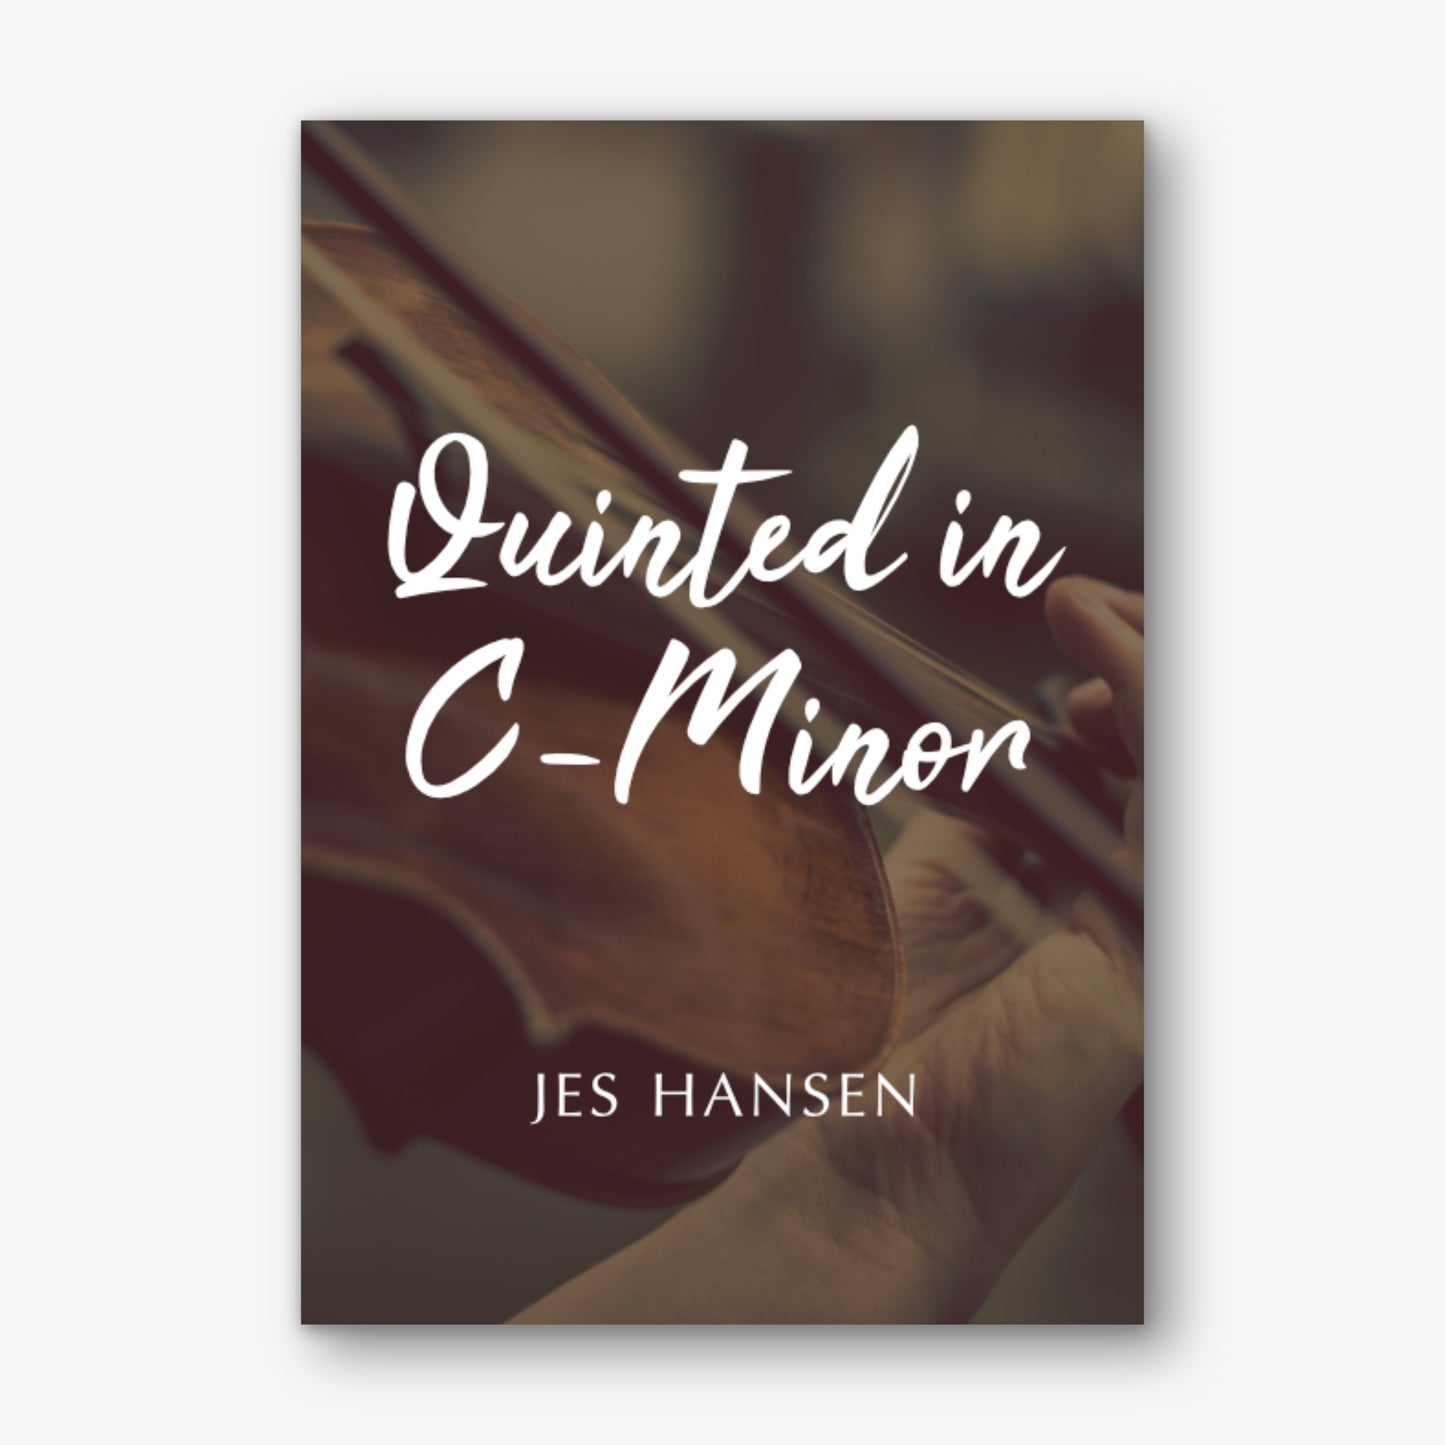 Quintet in C-Minor by Jes Hansen